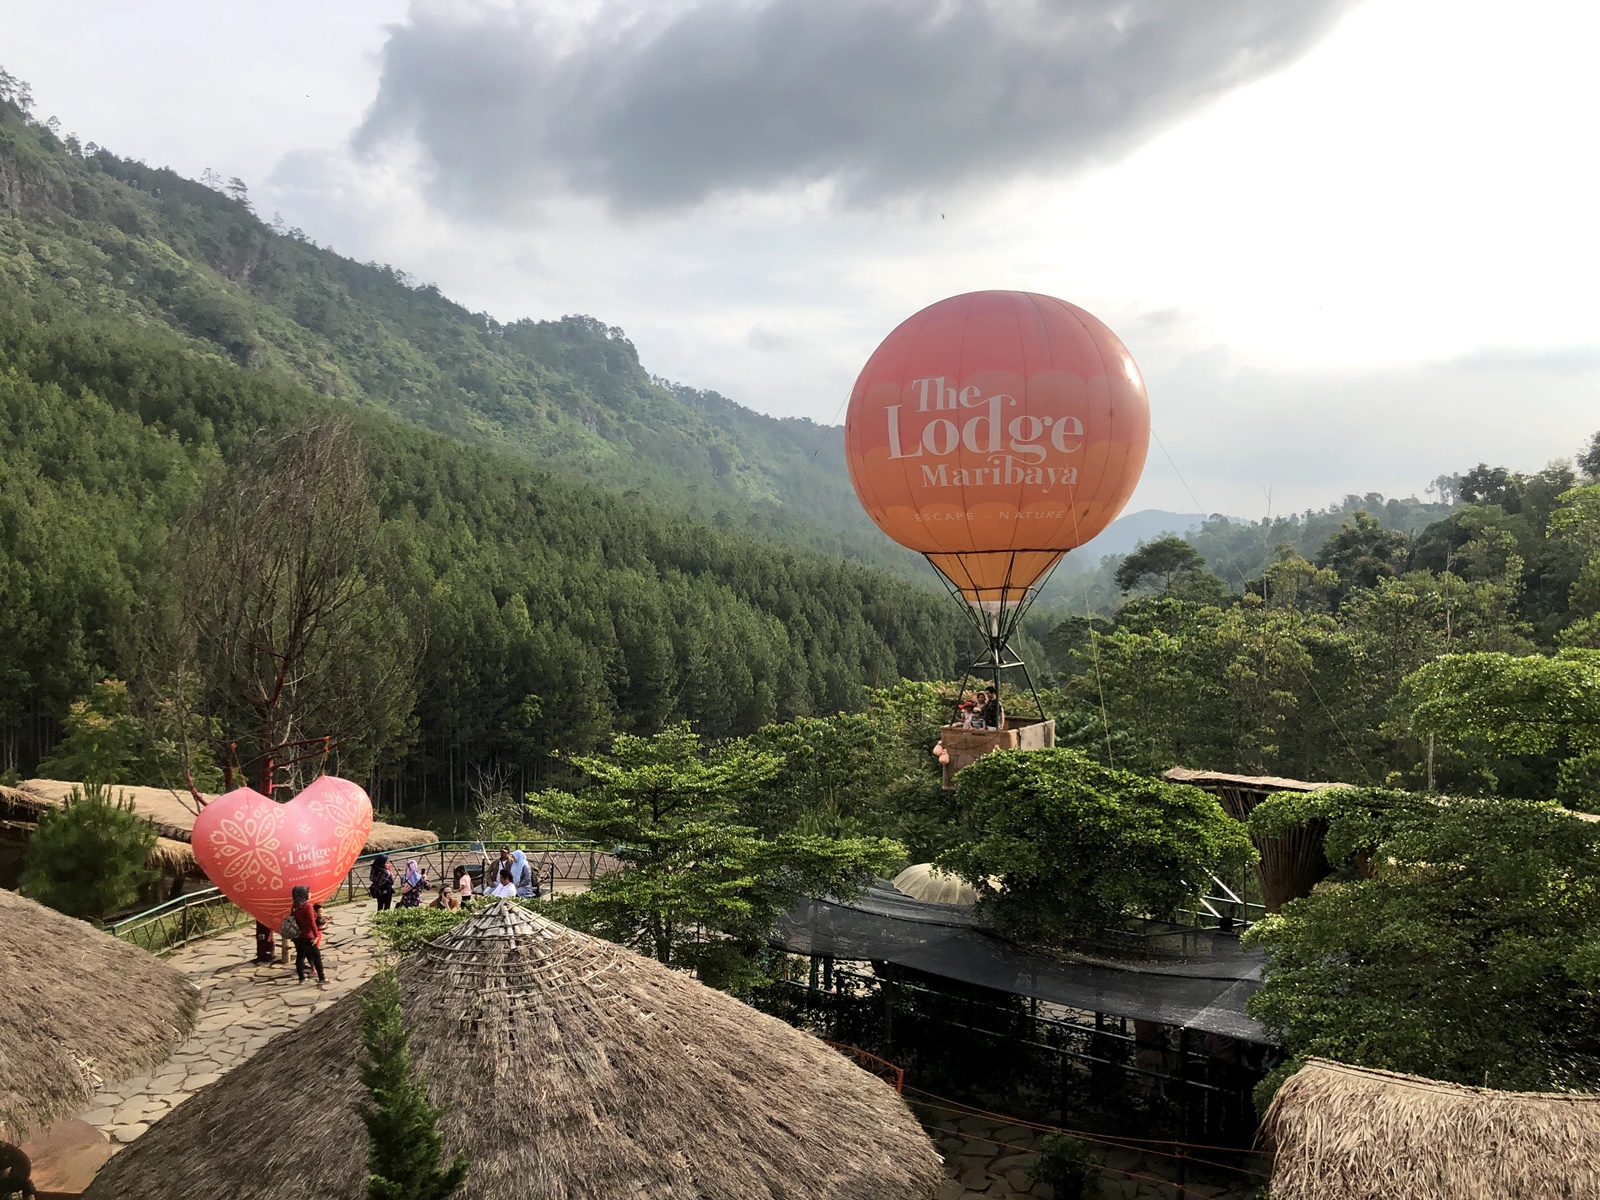 The Lodge Maribaya tempat wisata di Bandung yang menawarkan udara sejuk pegunungan